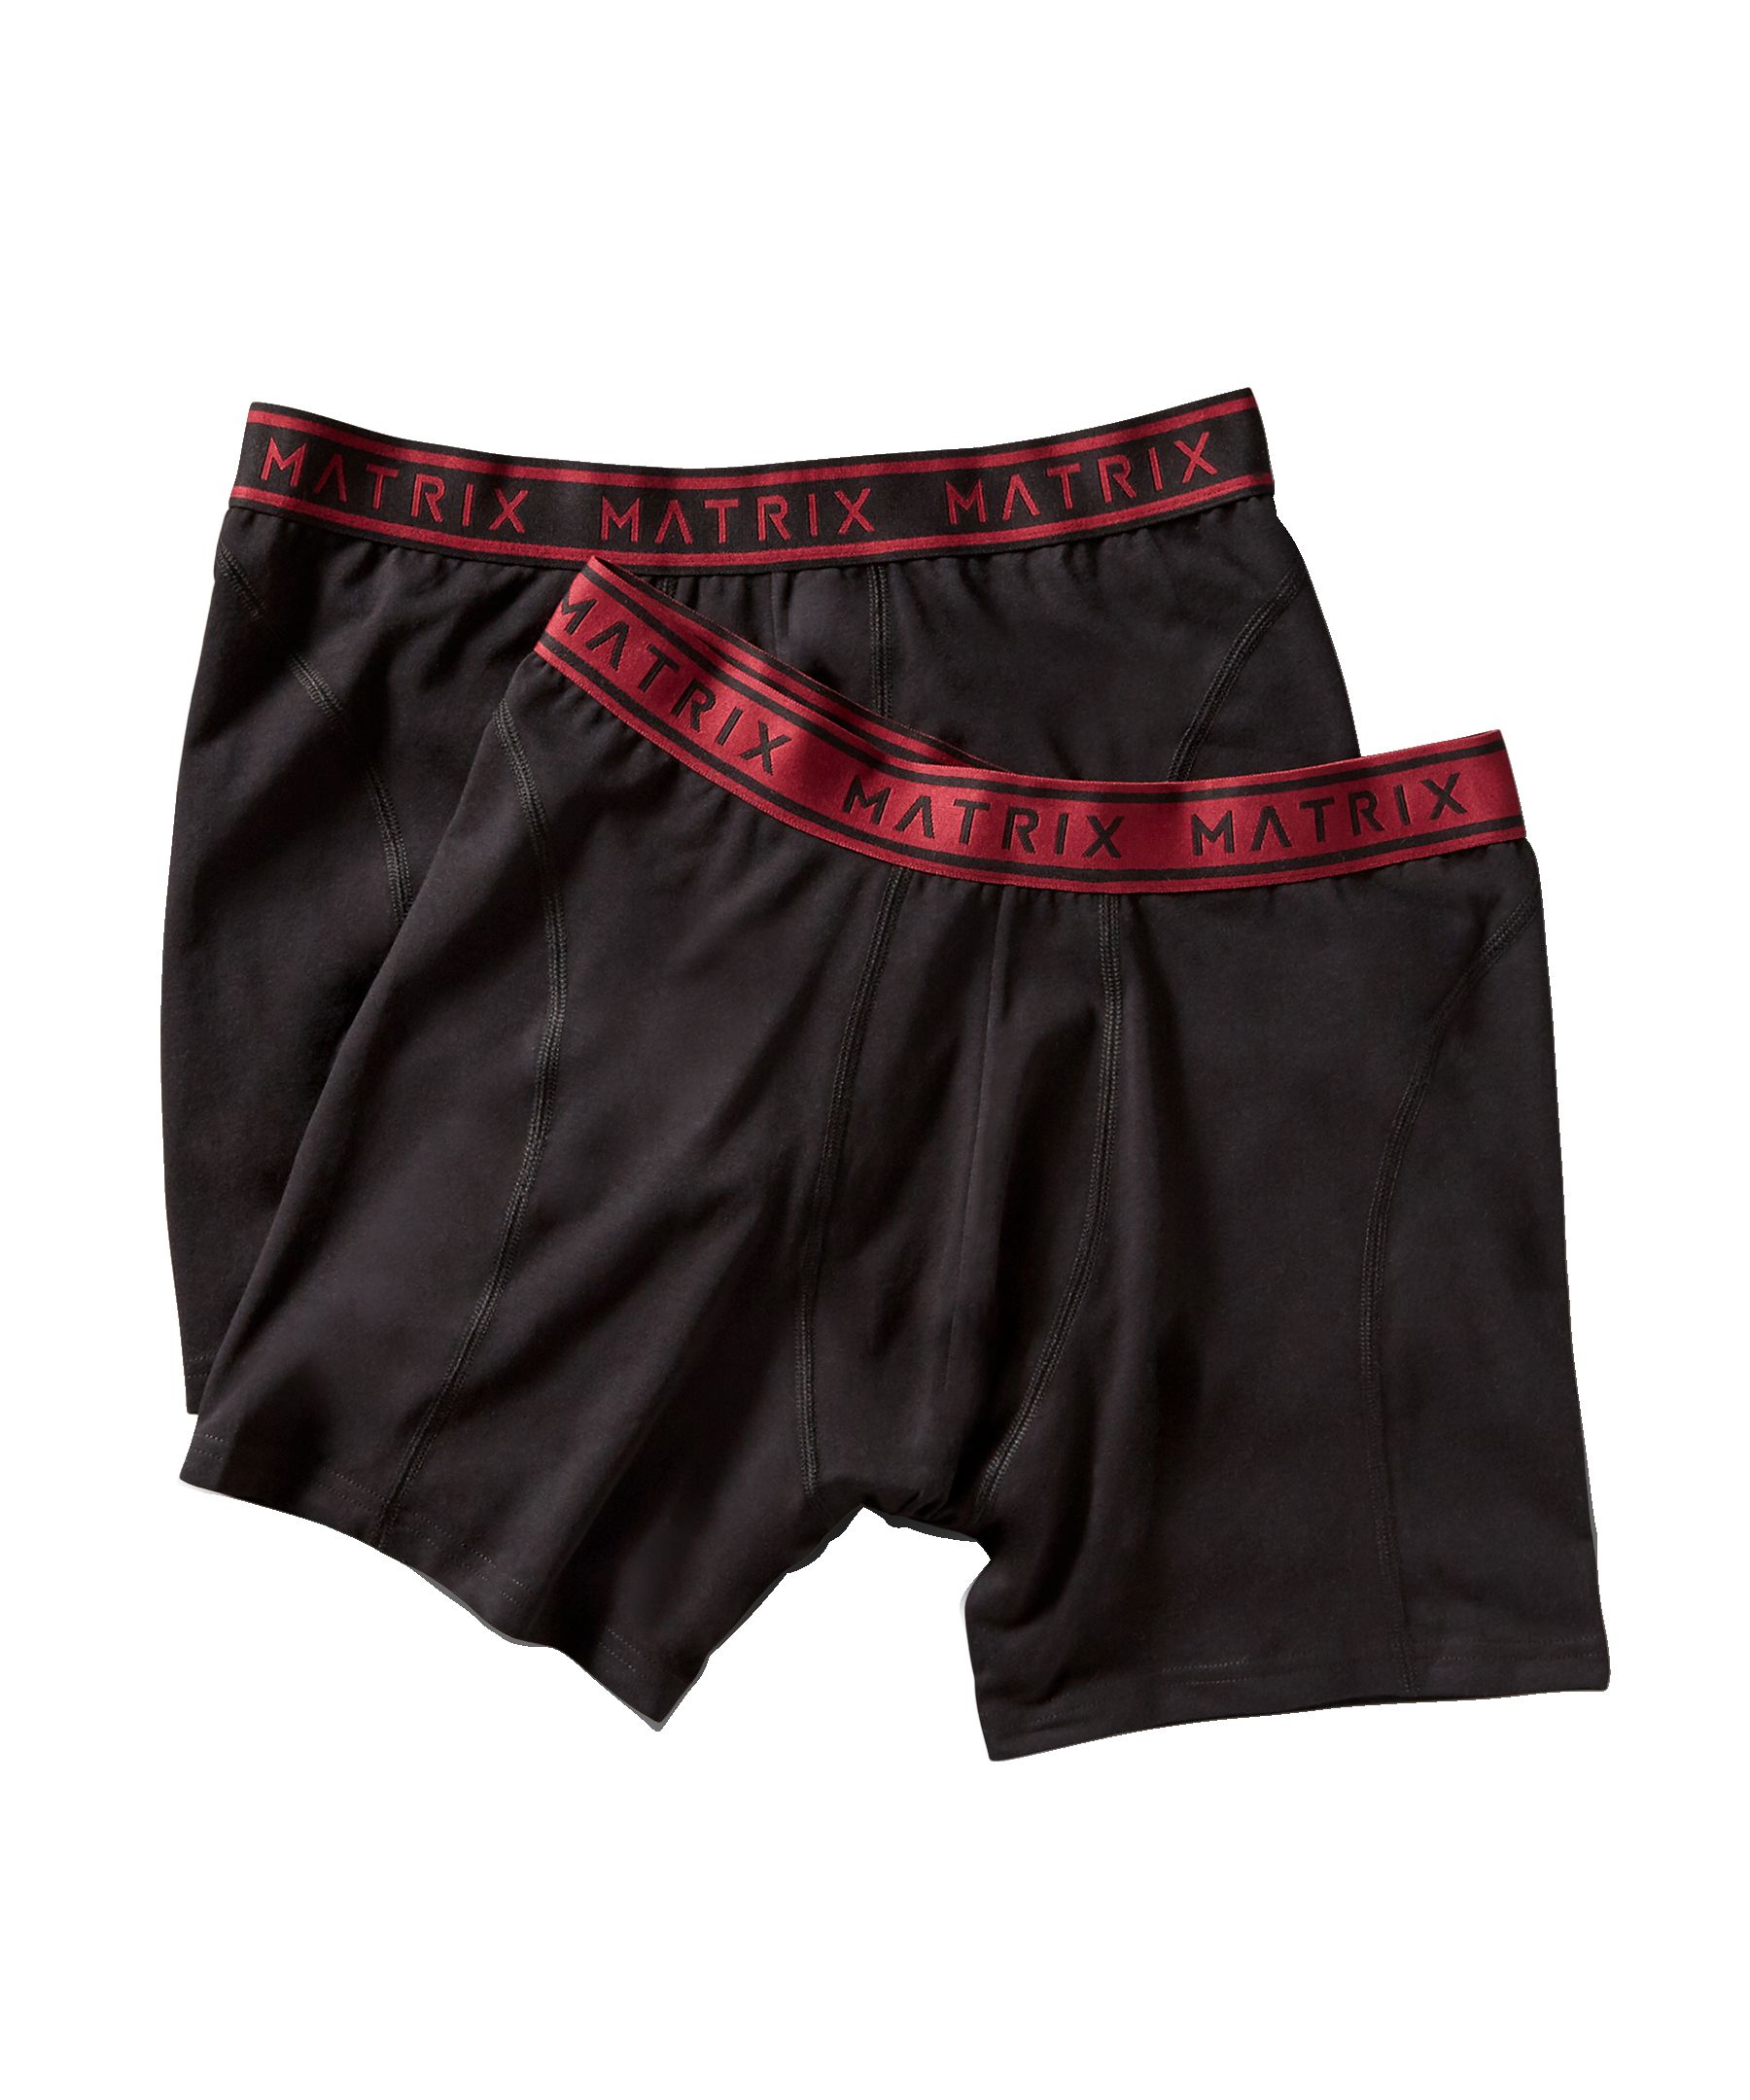 Matrix Men's 2 Pack Cotton Stretch Boxer Briefs Underwear